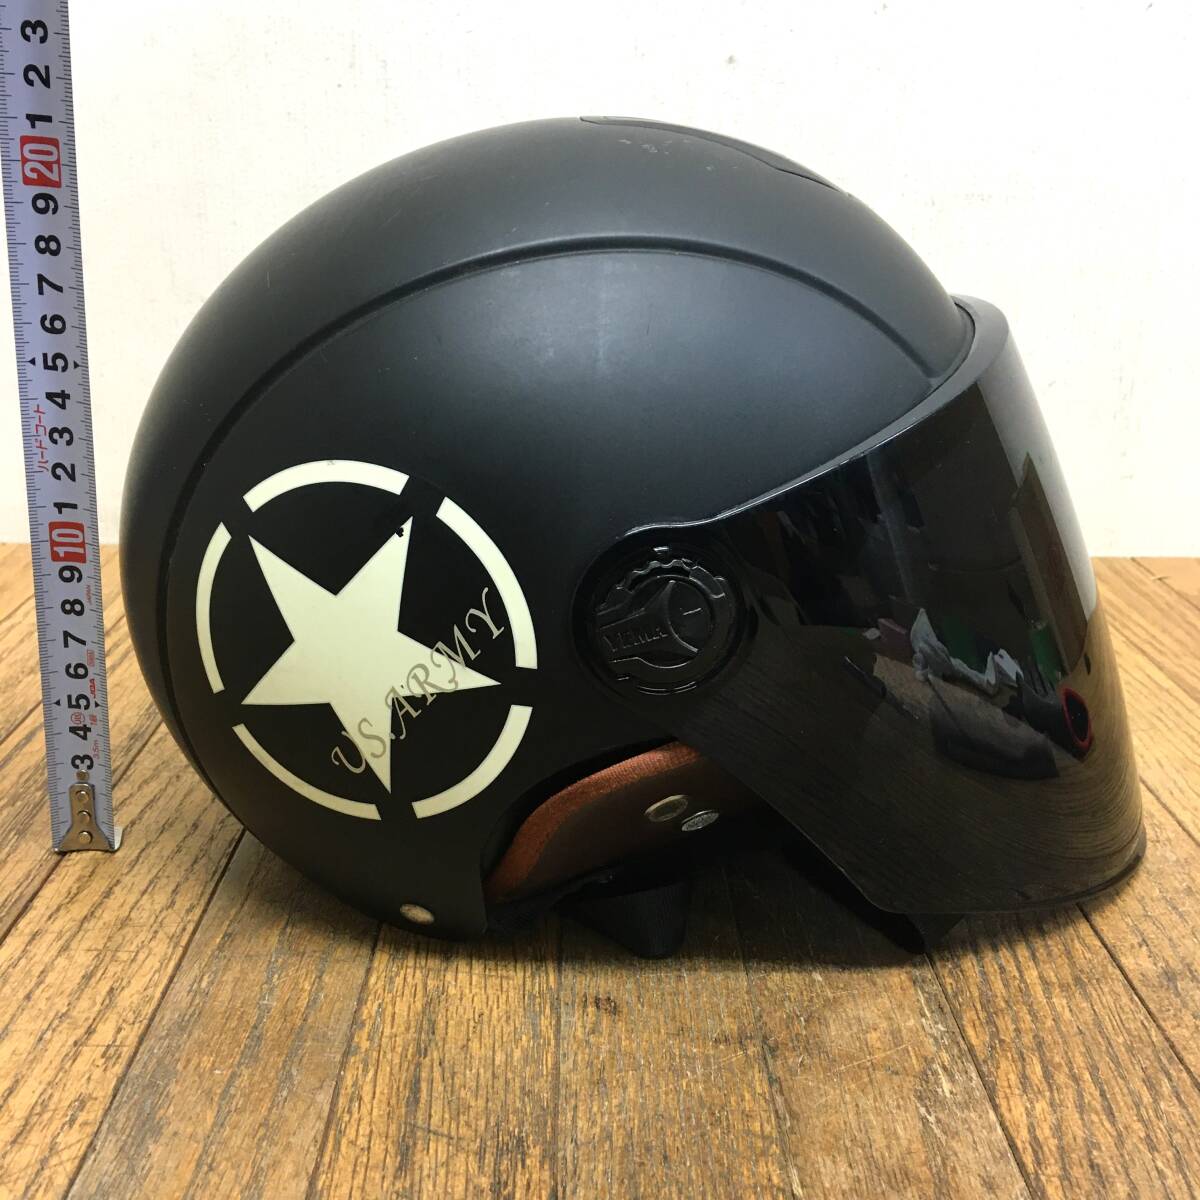 yema/ジェットヘルメット/motocube/2019年製/1101/us.army/マットブラック/黒/シールド付き/バイク/オートバイ/jet helmets/ha2_画像4